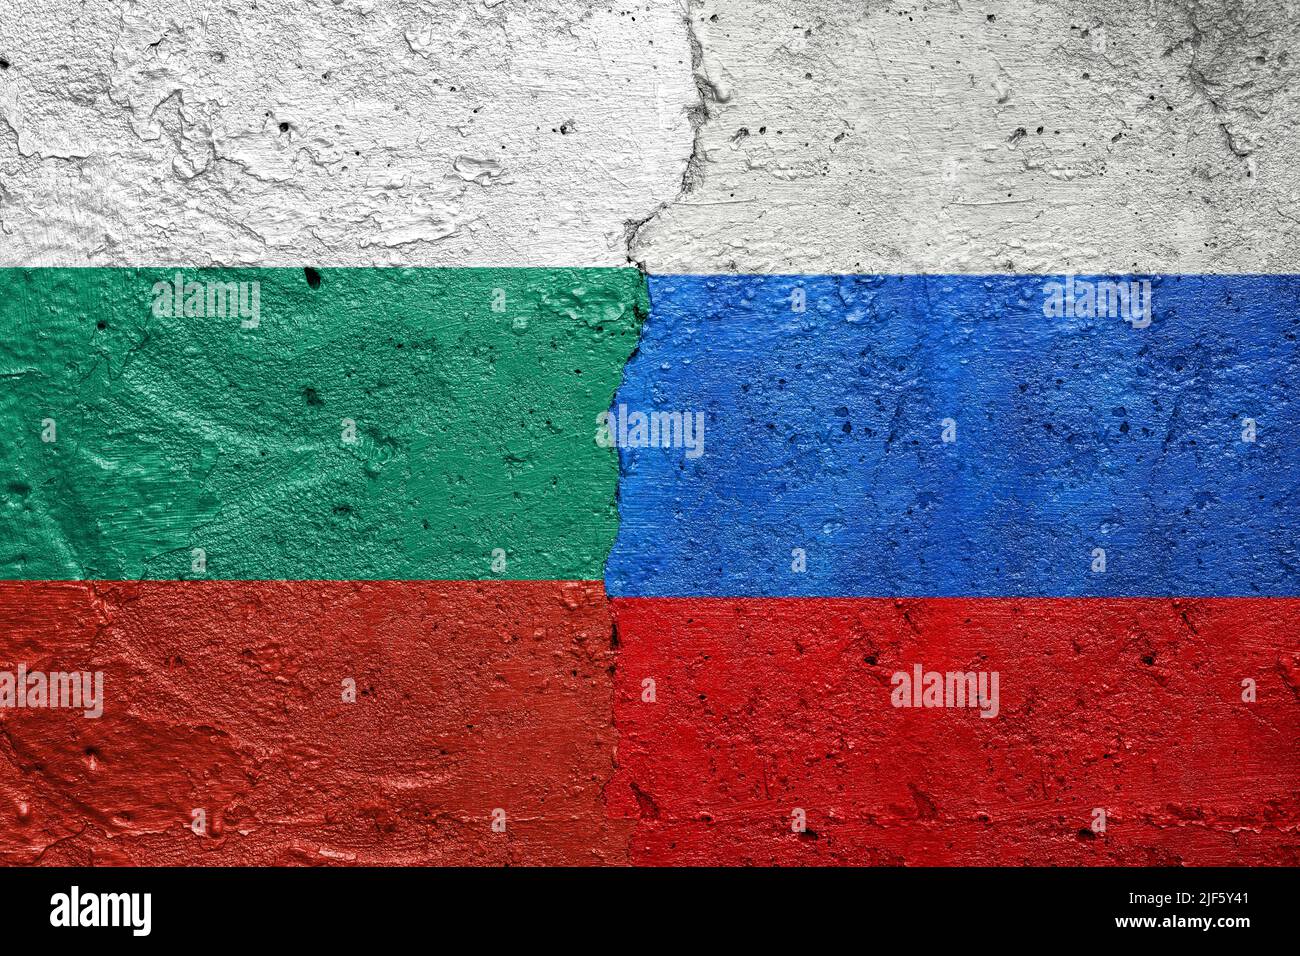 Etats-Unis contre Russie - mur en béton fissuré peint avec un drapeau bulgare à gauche et un drapeau russe à droite Banque D'Images